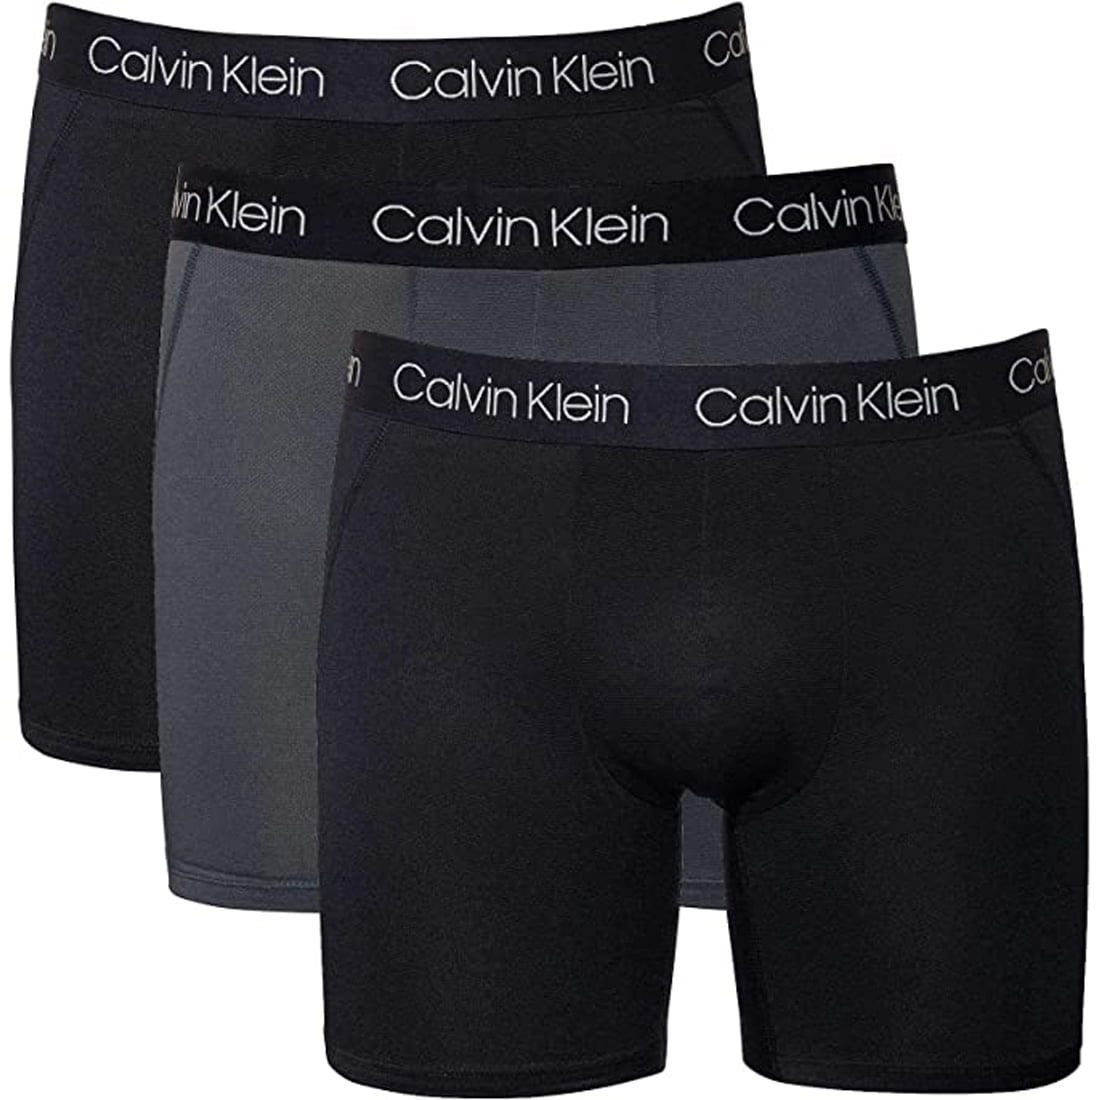 Calvin Klein - Calvin Klein Mens 3 Pack Body Modal Boxer Briefs ...